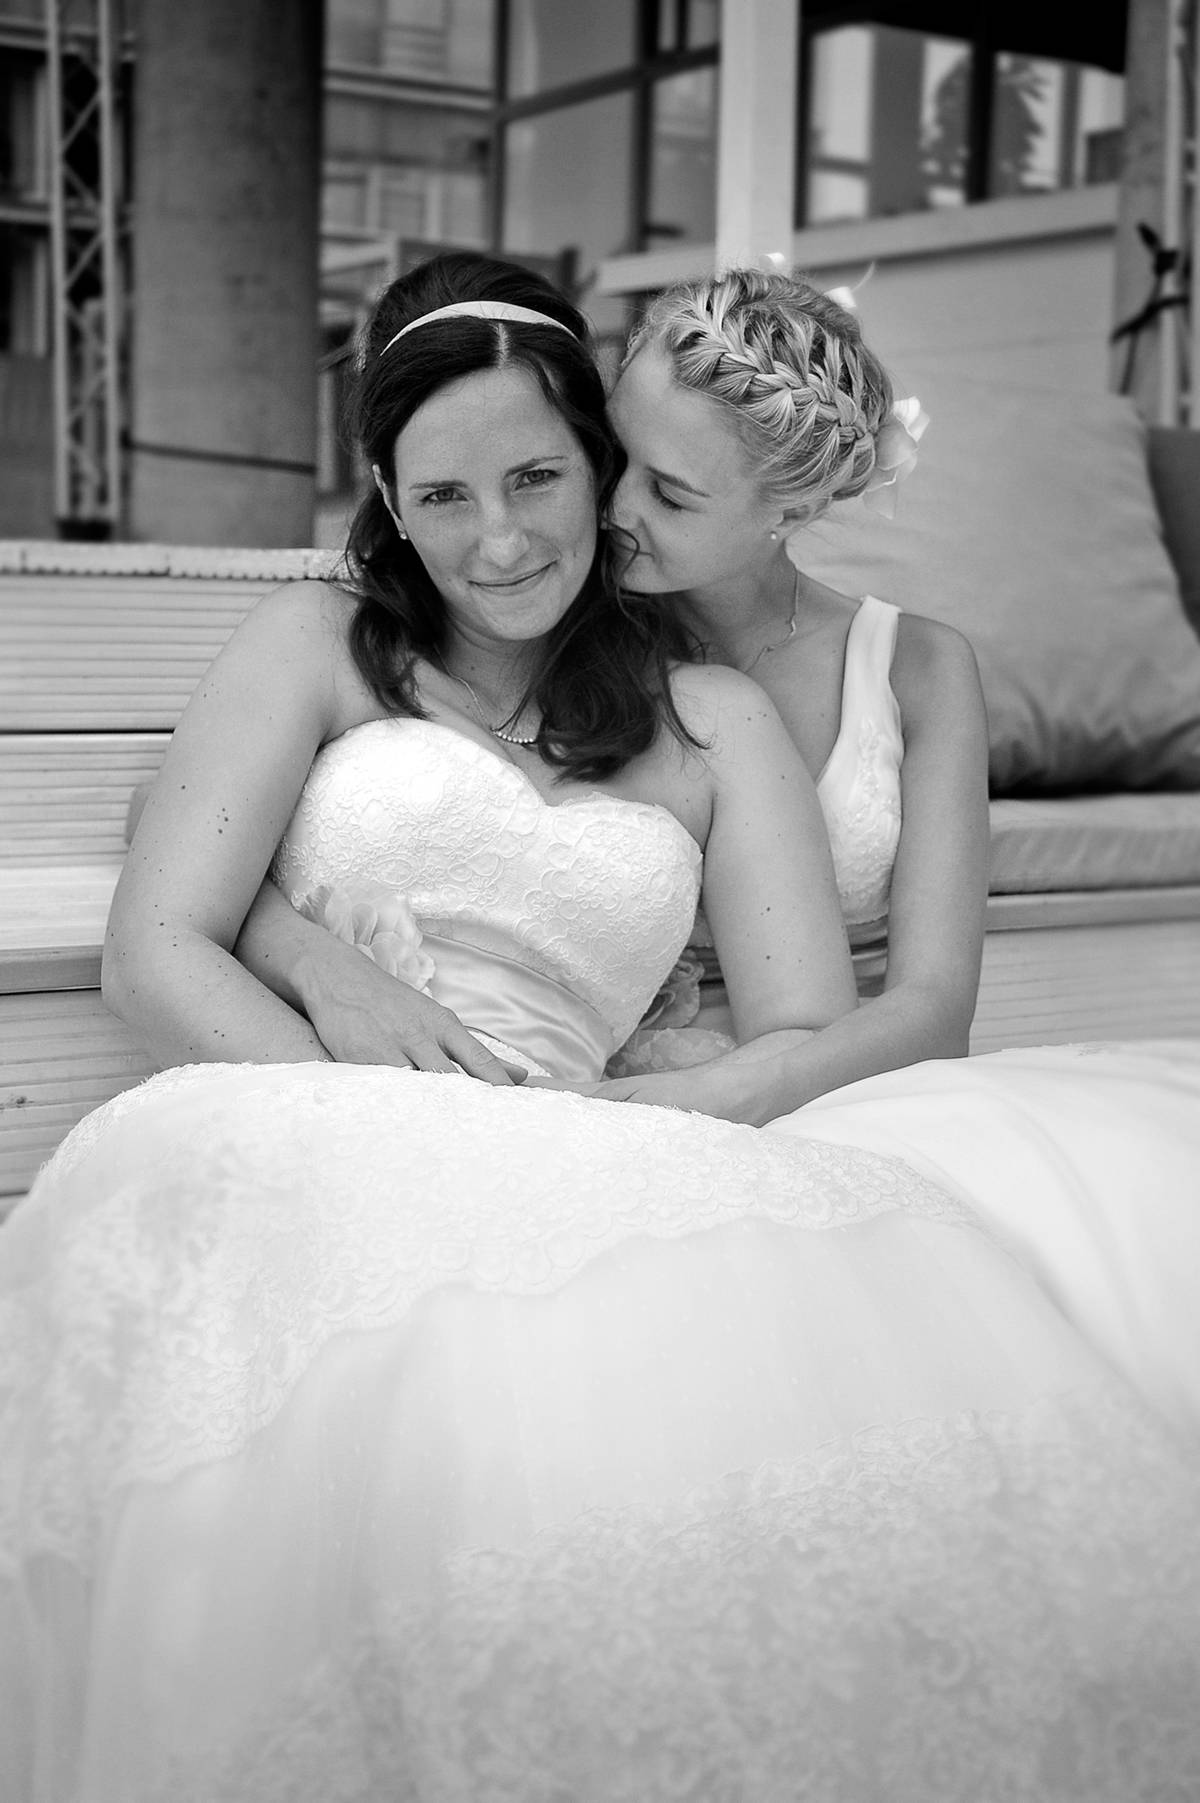 Hochzeitsfoto von Tiffy & Anne - Hochzeitsfotografie wesayyes aus Berlin